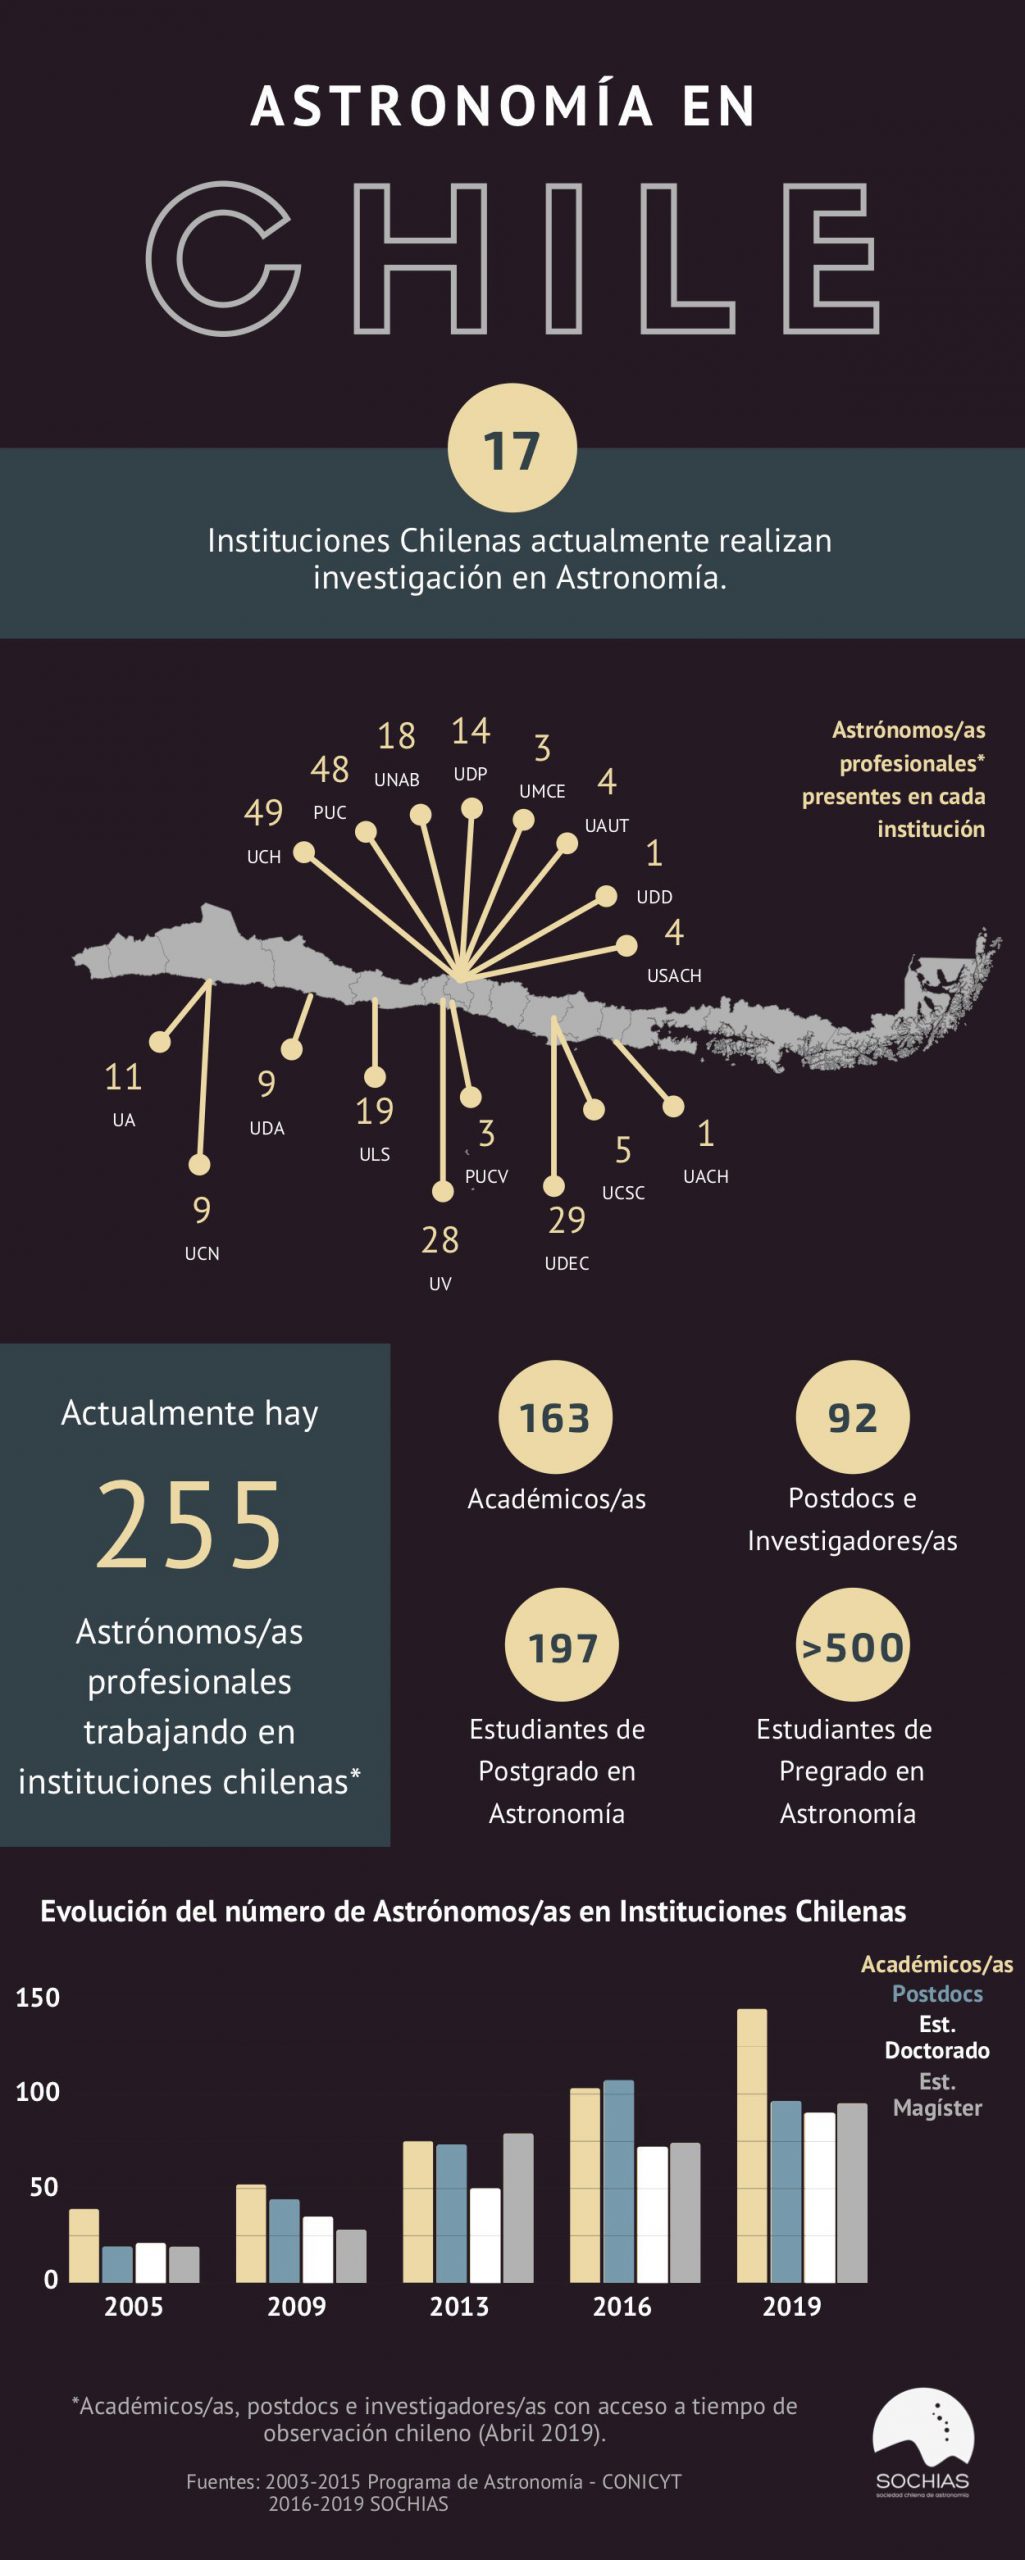 ¿Cuántas astrónomas y astrónomos hay trabajando en instituciones chilenas?¿Existe brecha de género?